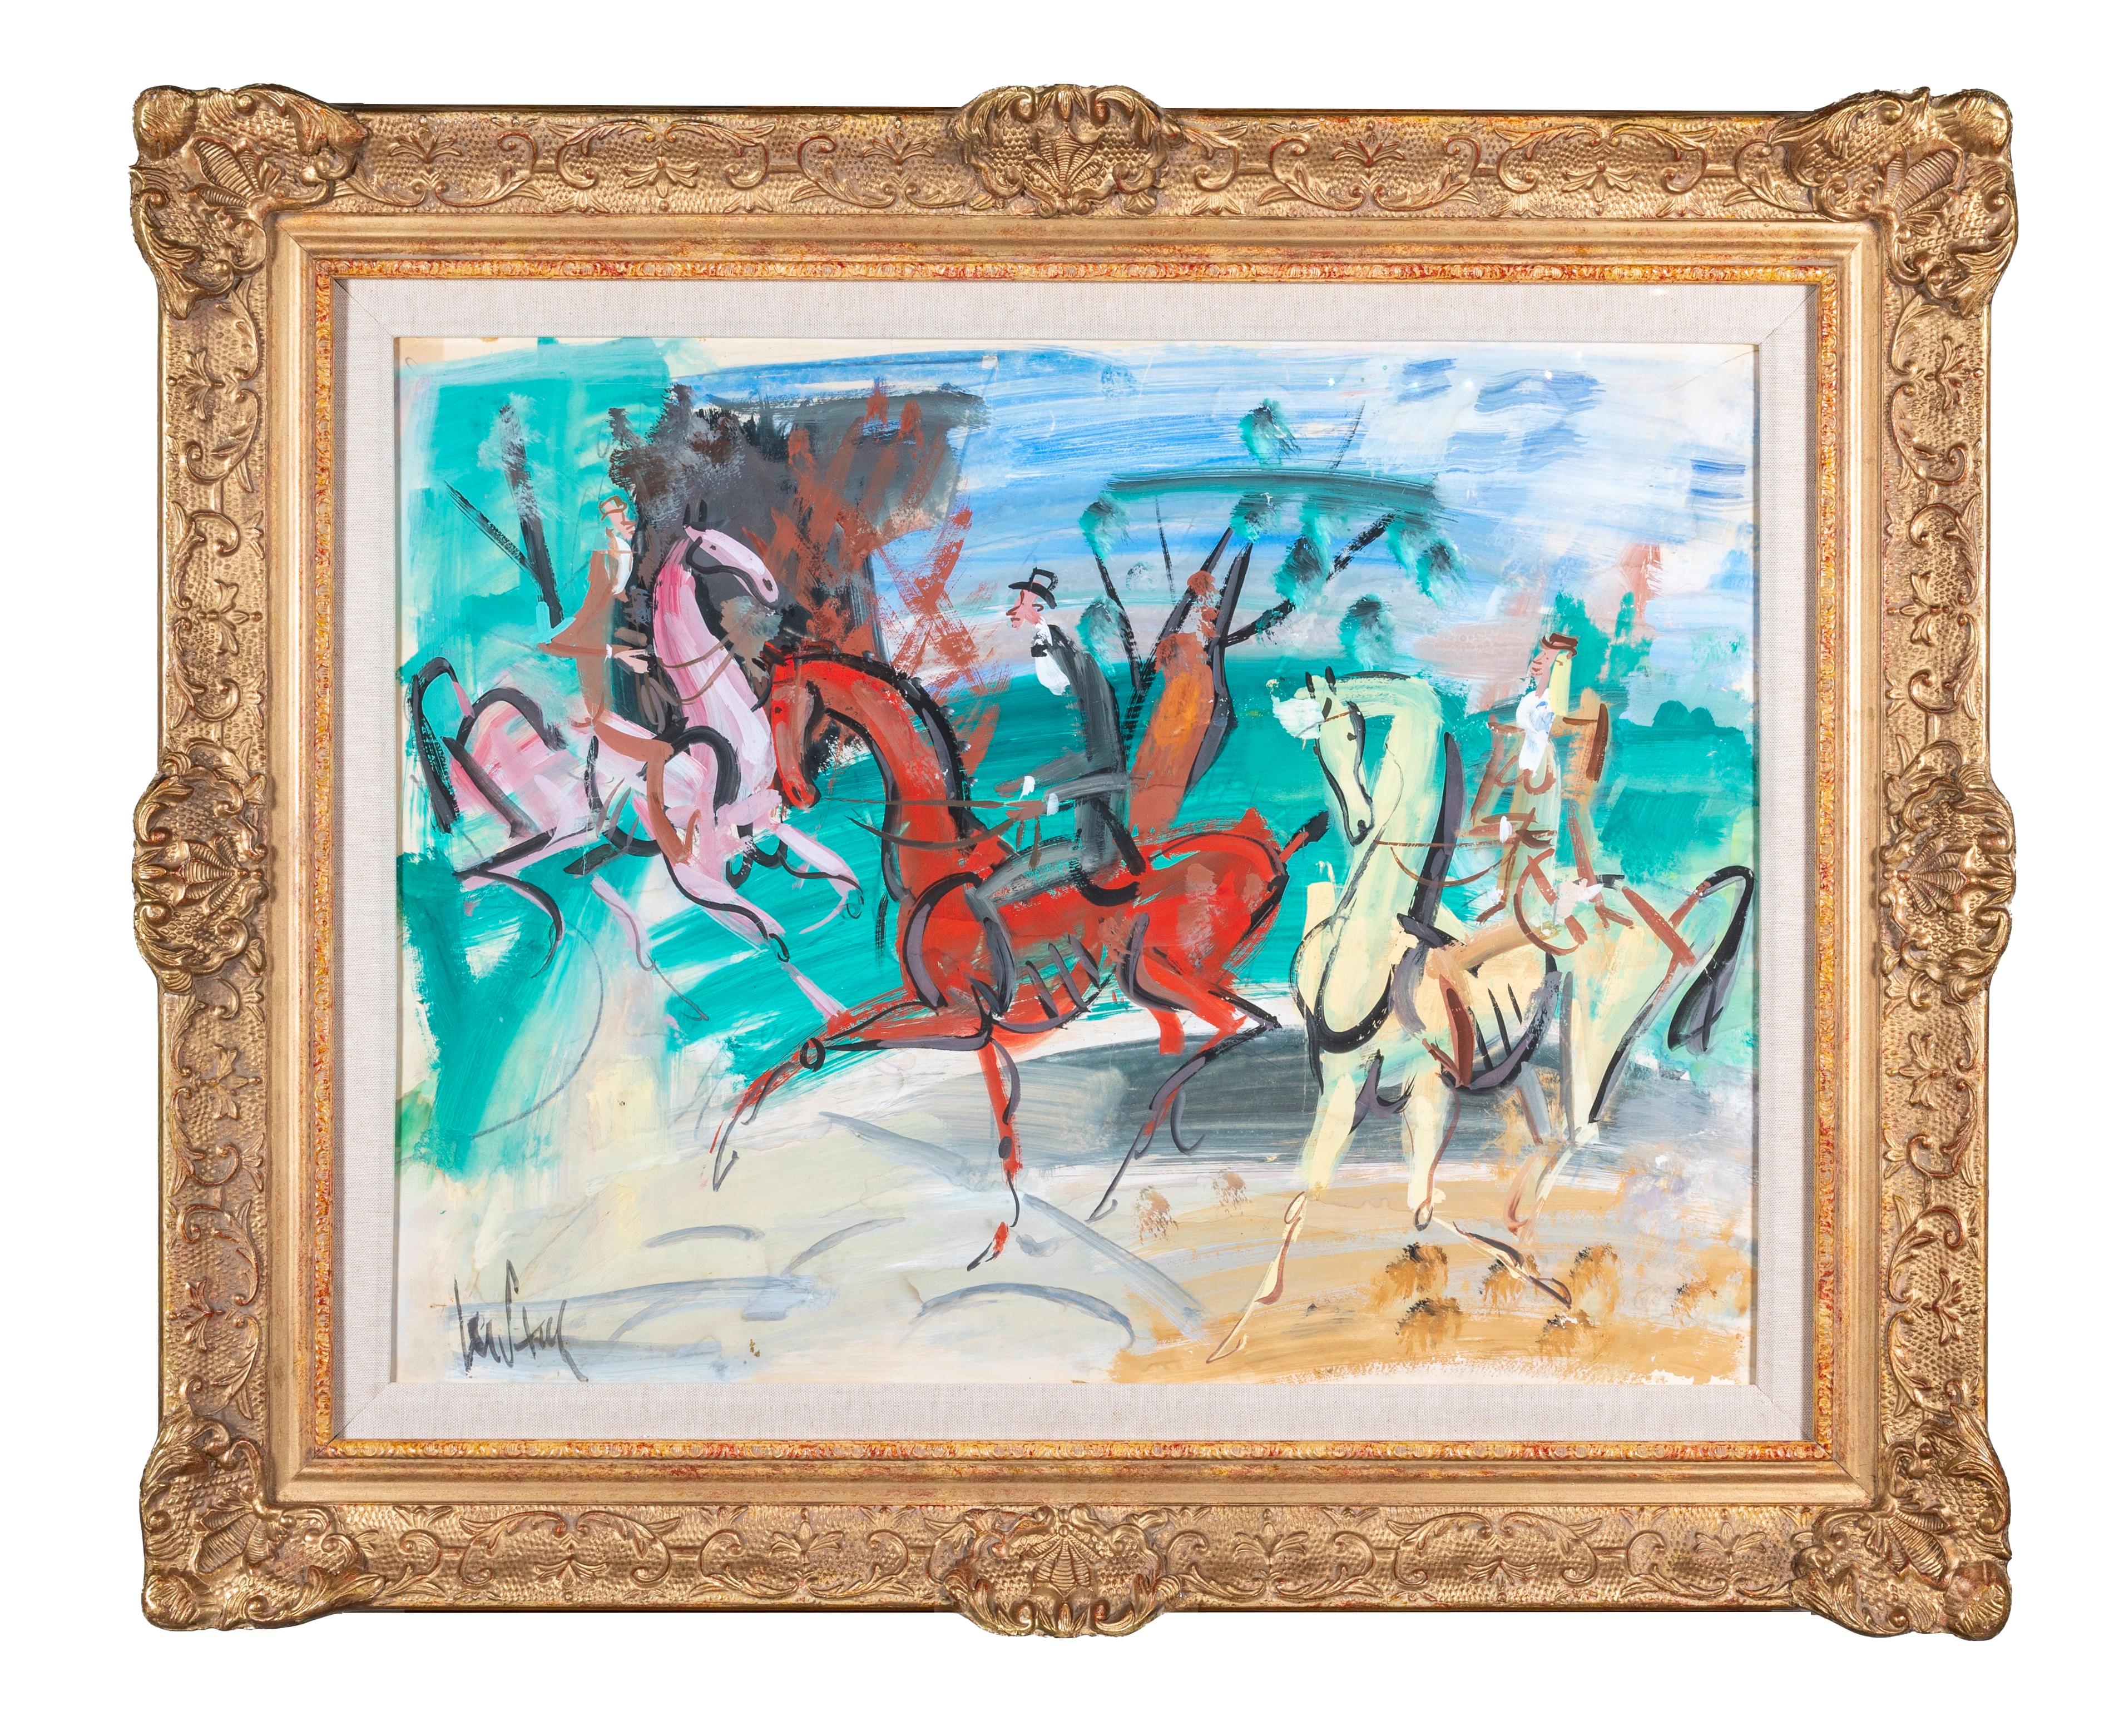 « The Promenade » - Peinture figurative abstraite de chevaux et de personnages, rouge, vert